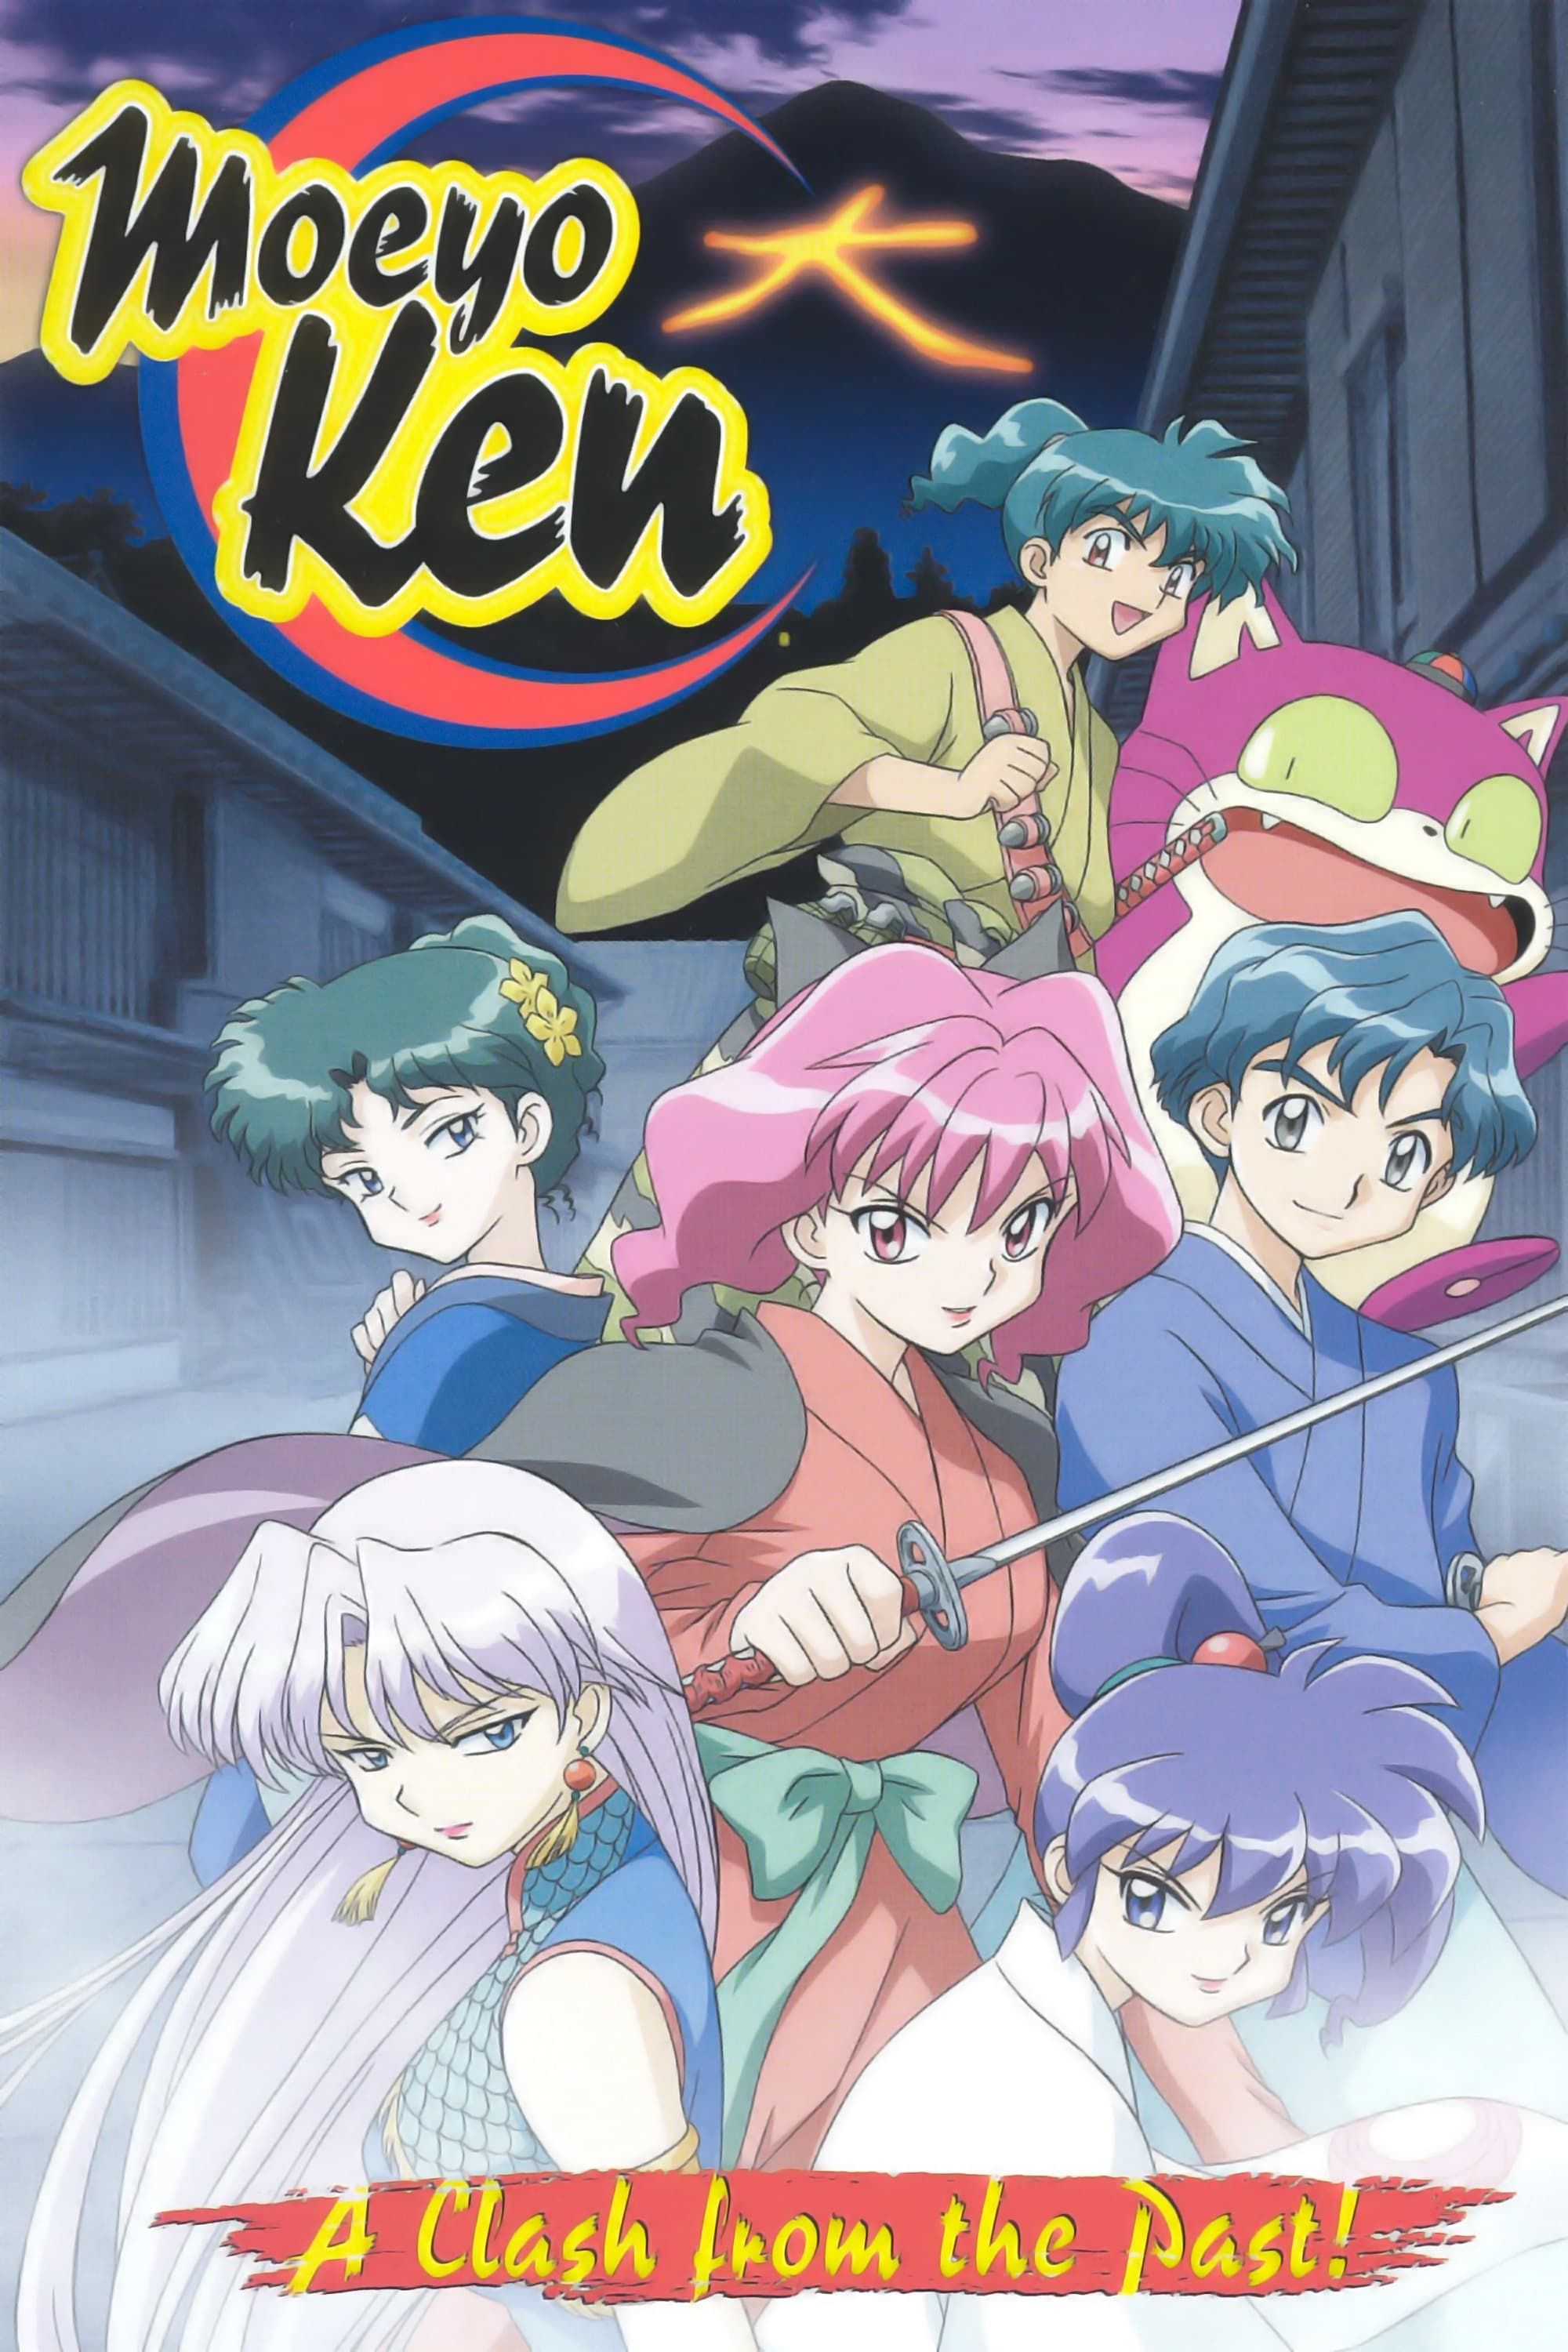 [Comedy] Kidou Shinsengumi Moeyo Ken (OVA) (Sub) Original Copyright